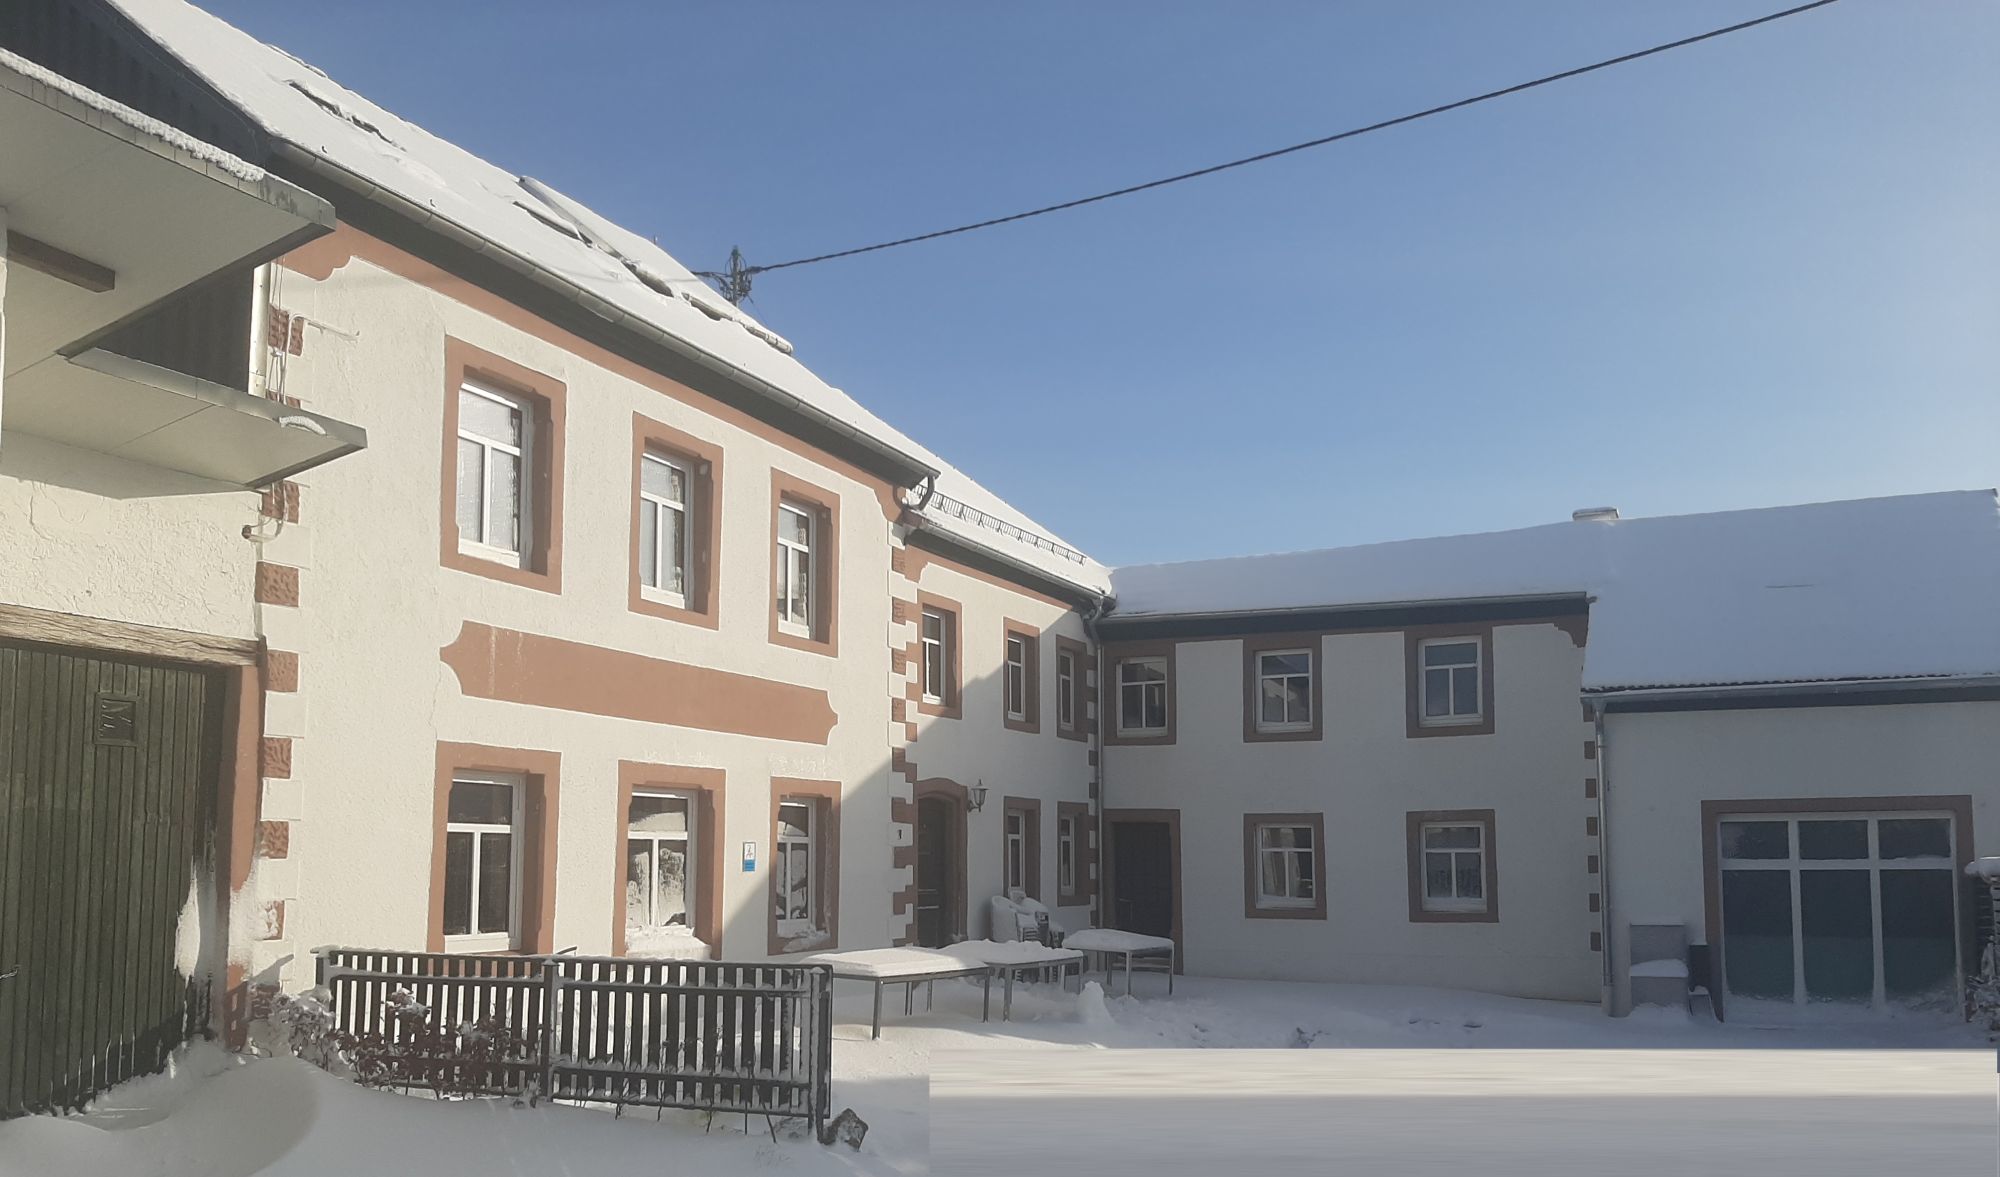 Eifel Ferienhaus Rodershausen im Winter